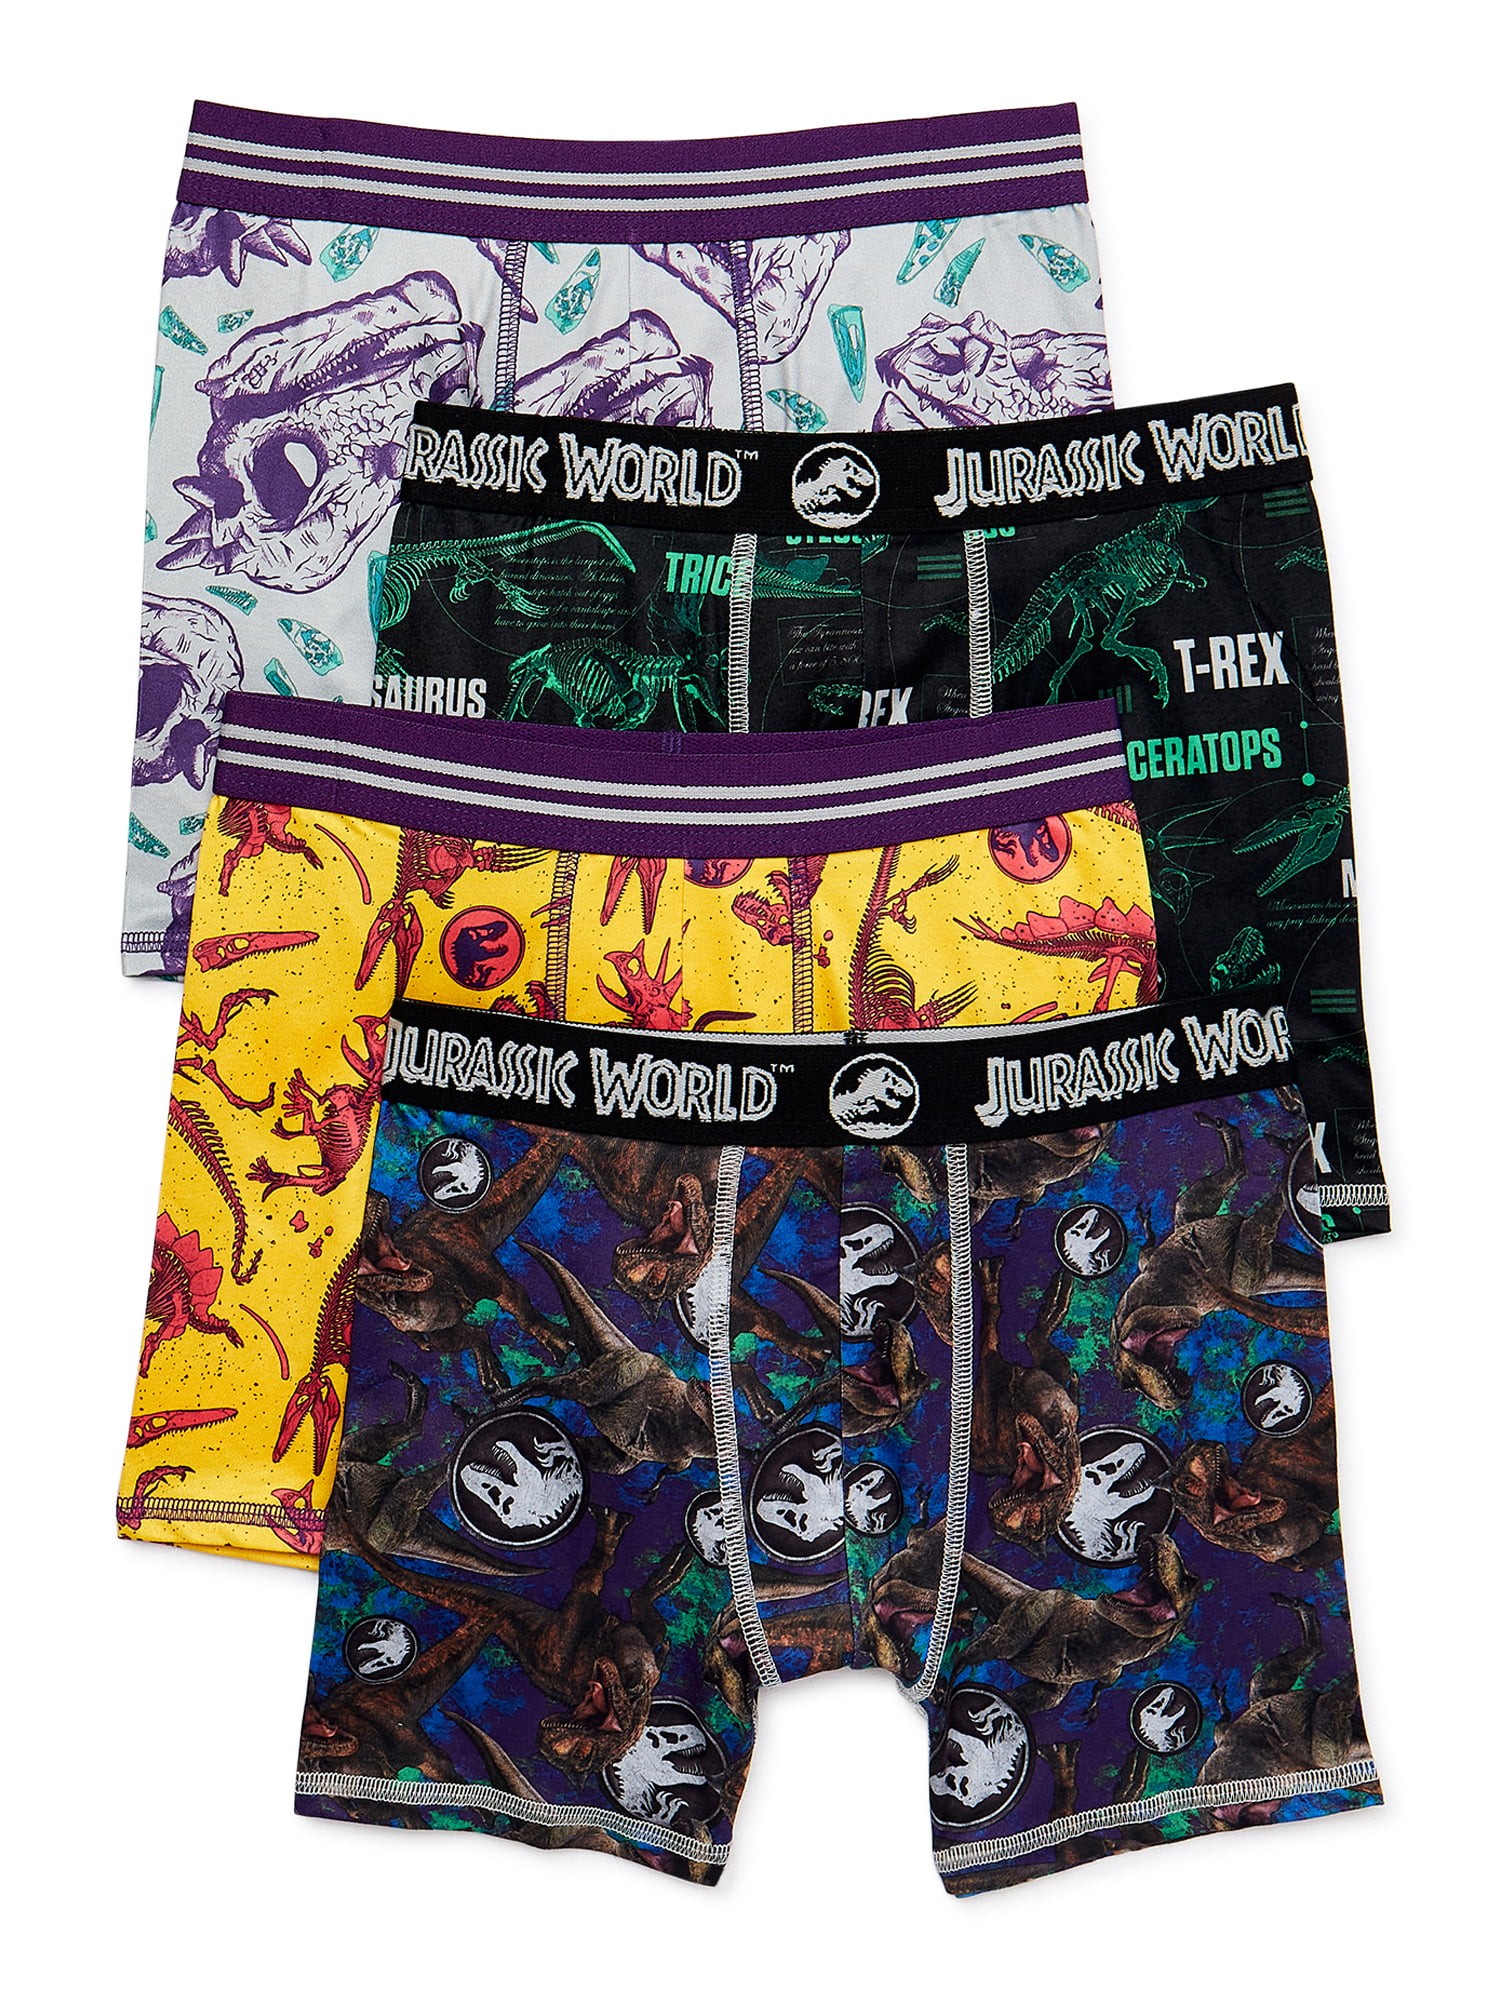 Jurassic World Boys Underwear, 5 Pack Boxer Briefs Sizes 4-8